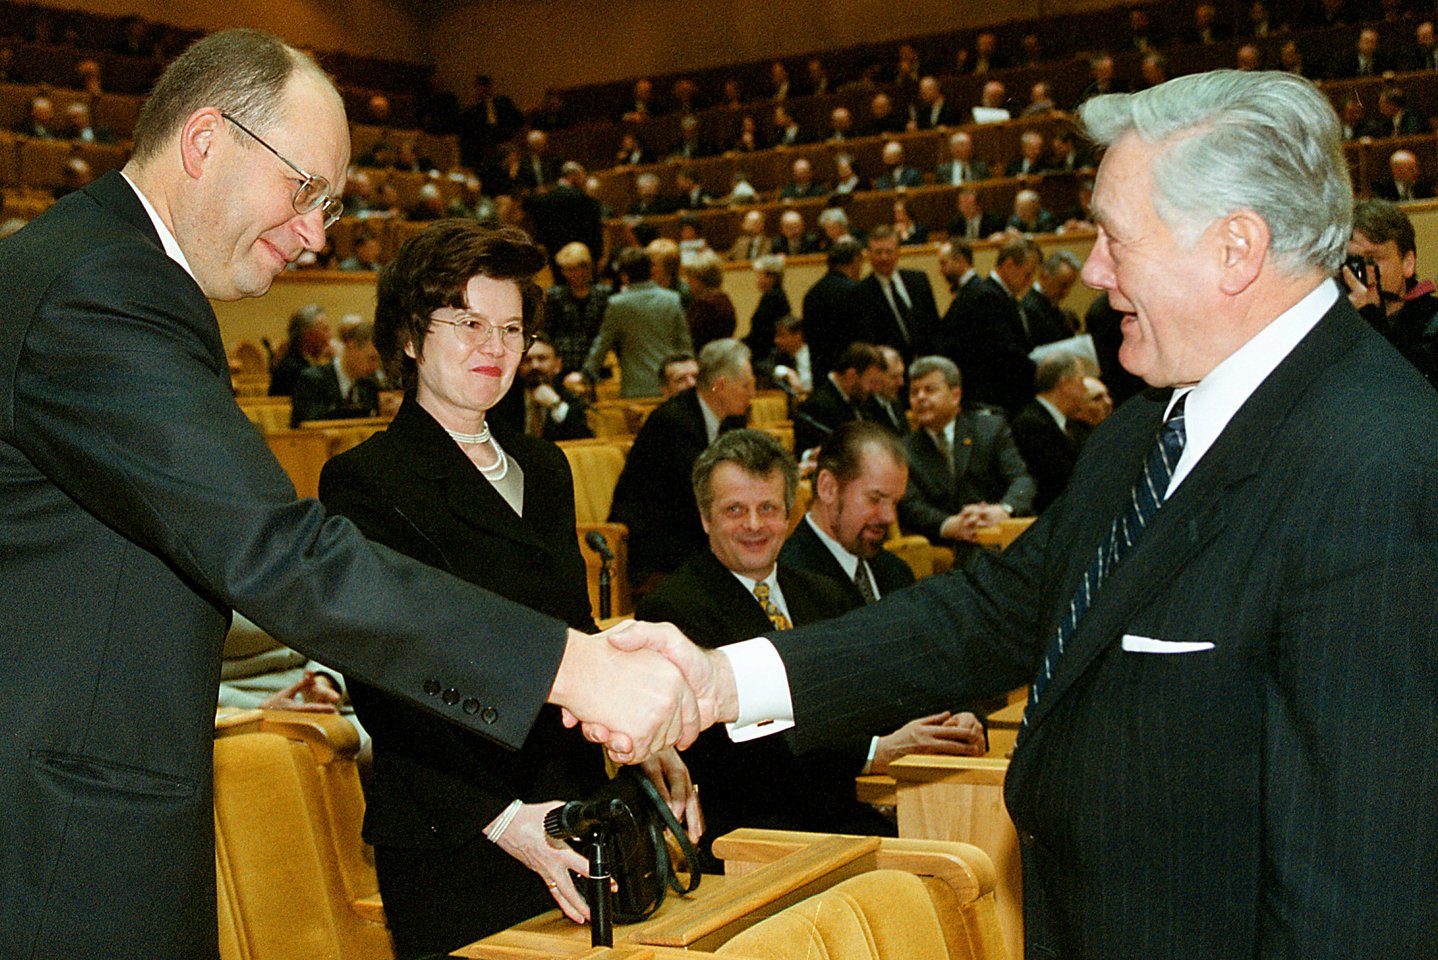 1996 m. ministru pirmininku paskirtas konservatorius Gediminas Vagnorius, jo vadovaujamos Vyriausybės programa patvirtinta gruodžio 10 dieną. 1999 m. balandžio 30-ąją G.Vagnorius atsistatydino prezidentui Valdui Adamkui pareiškus jam nepasitikėjimą.<br>R.Jurgaičio nuotr.